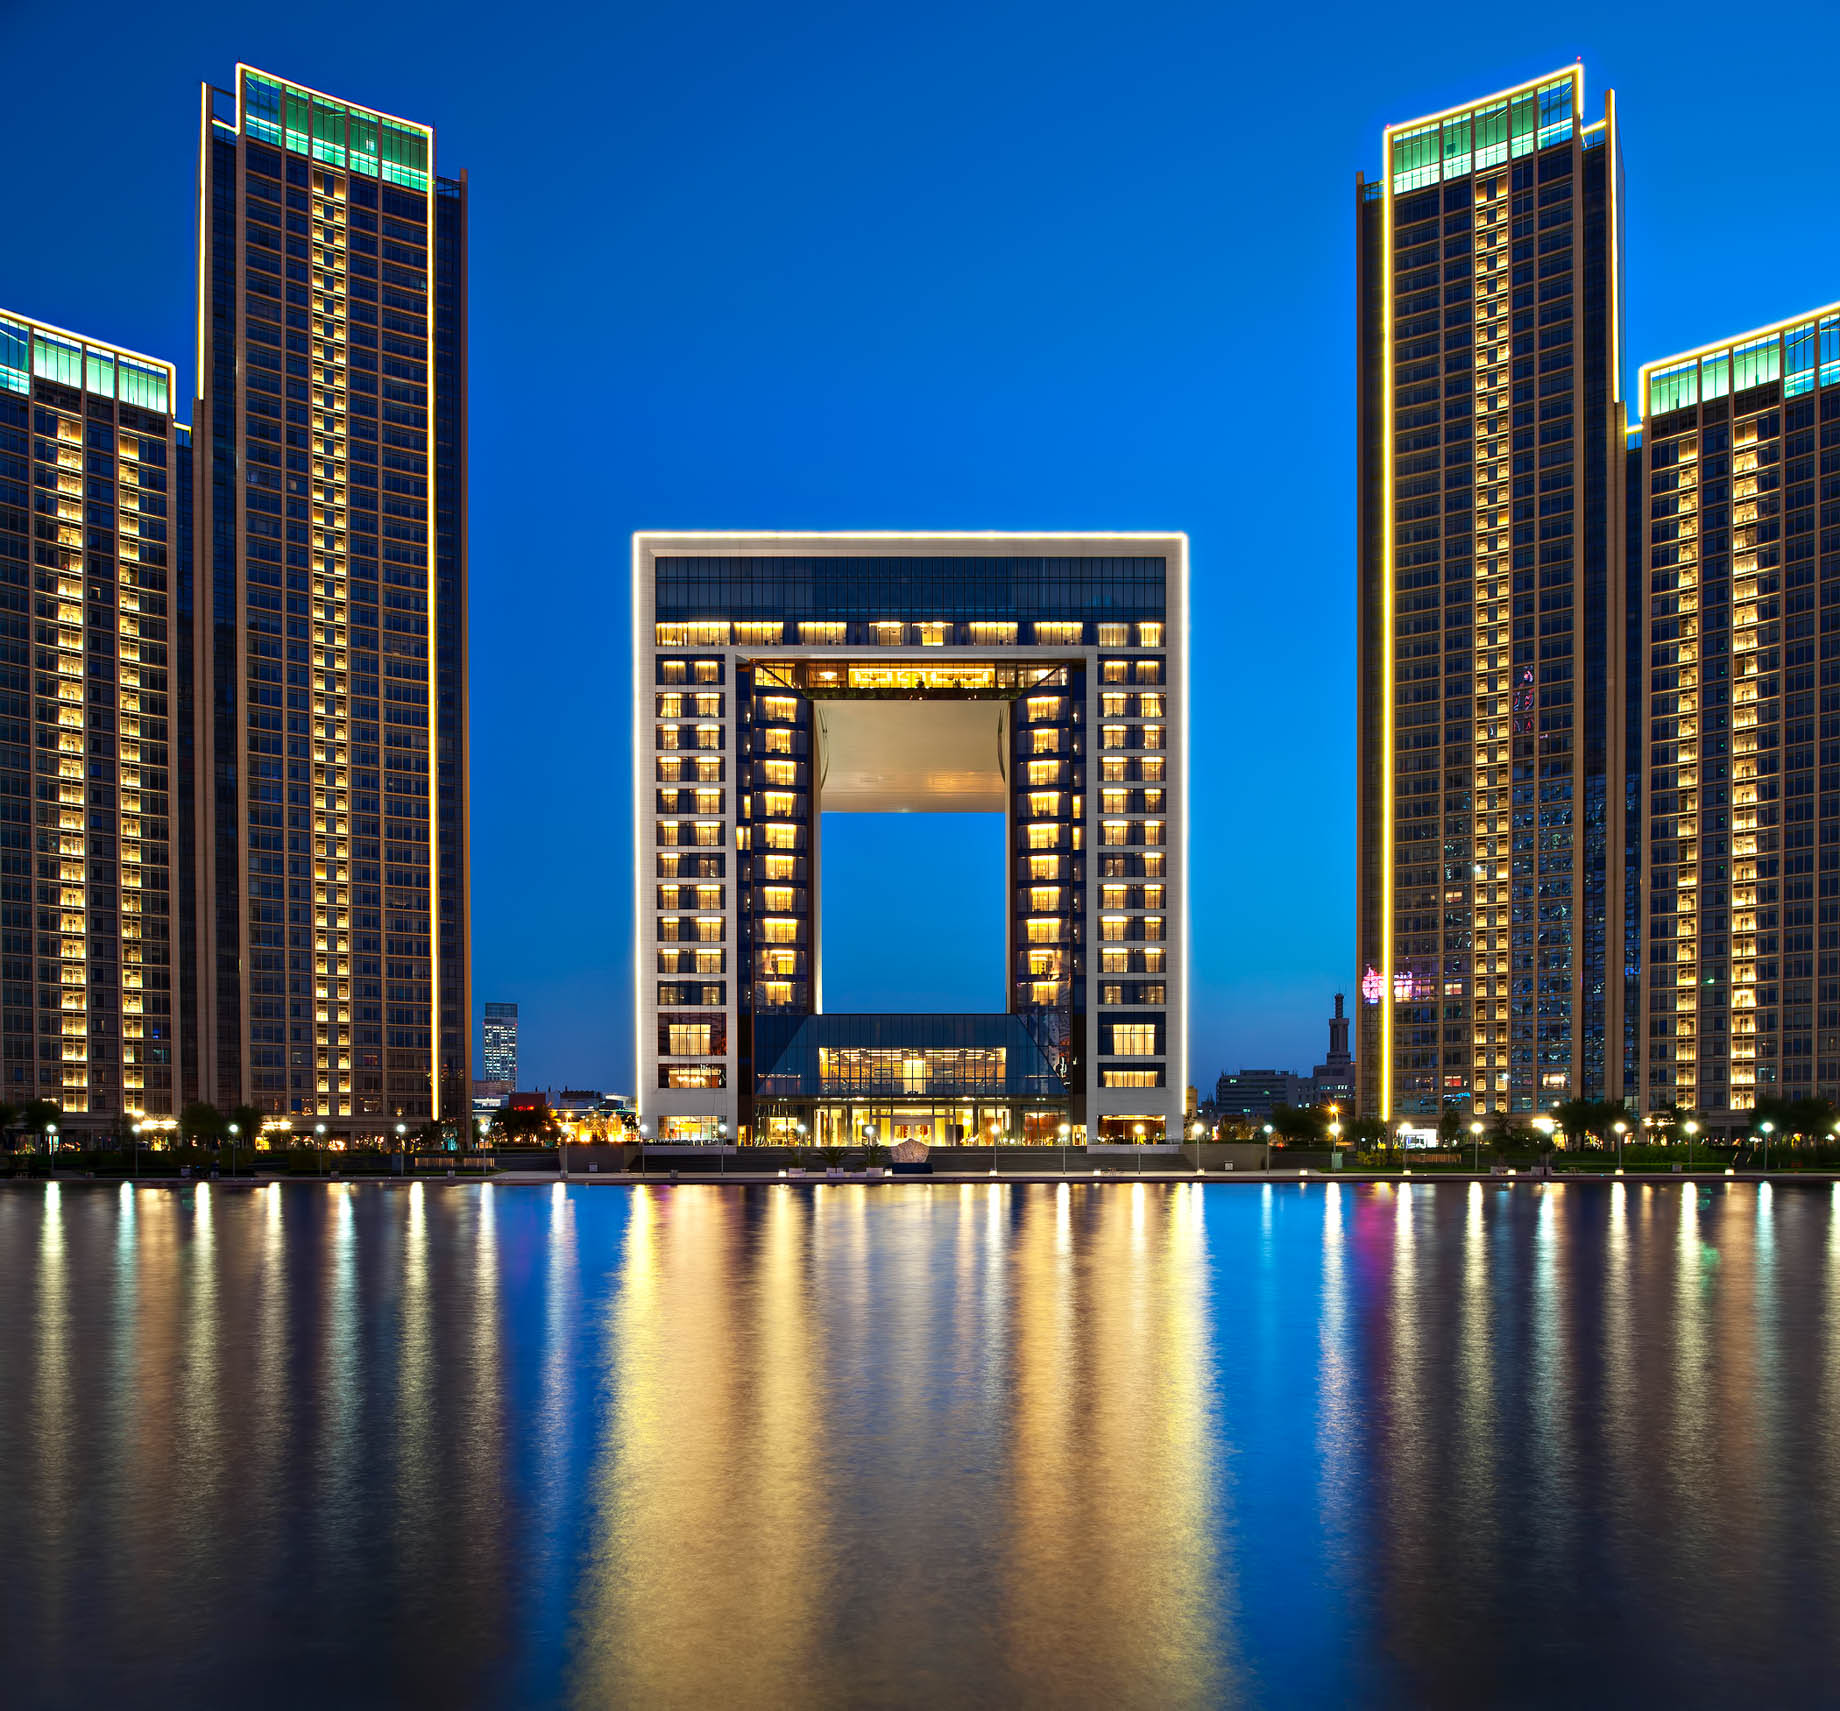 The St. Regis Tianjin Hotel - Tianjin, China - Night River View